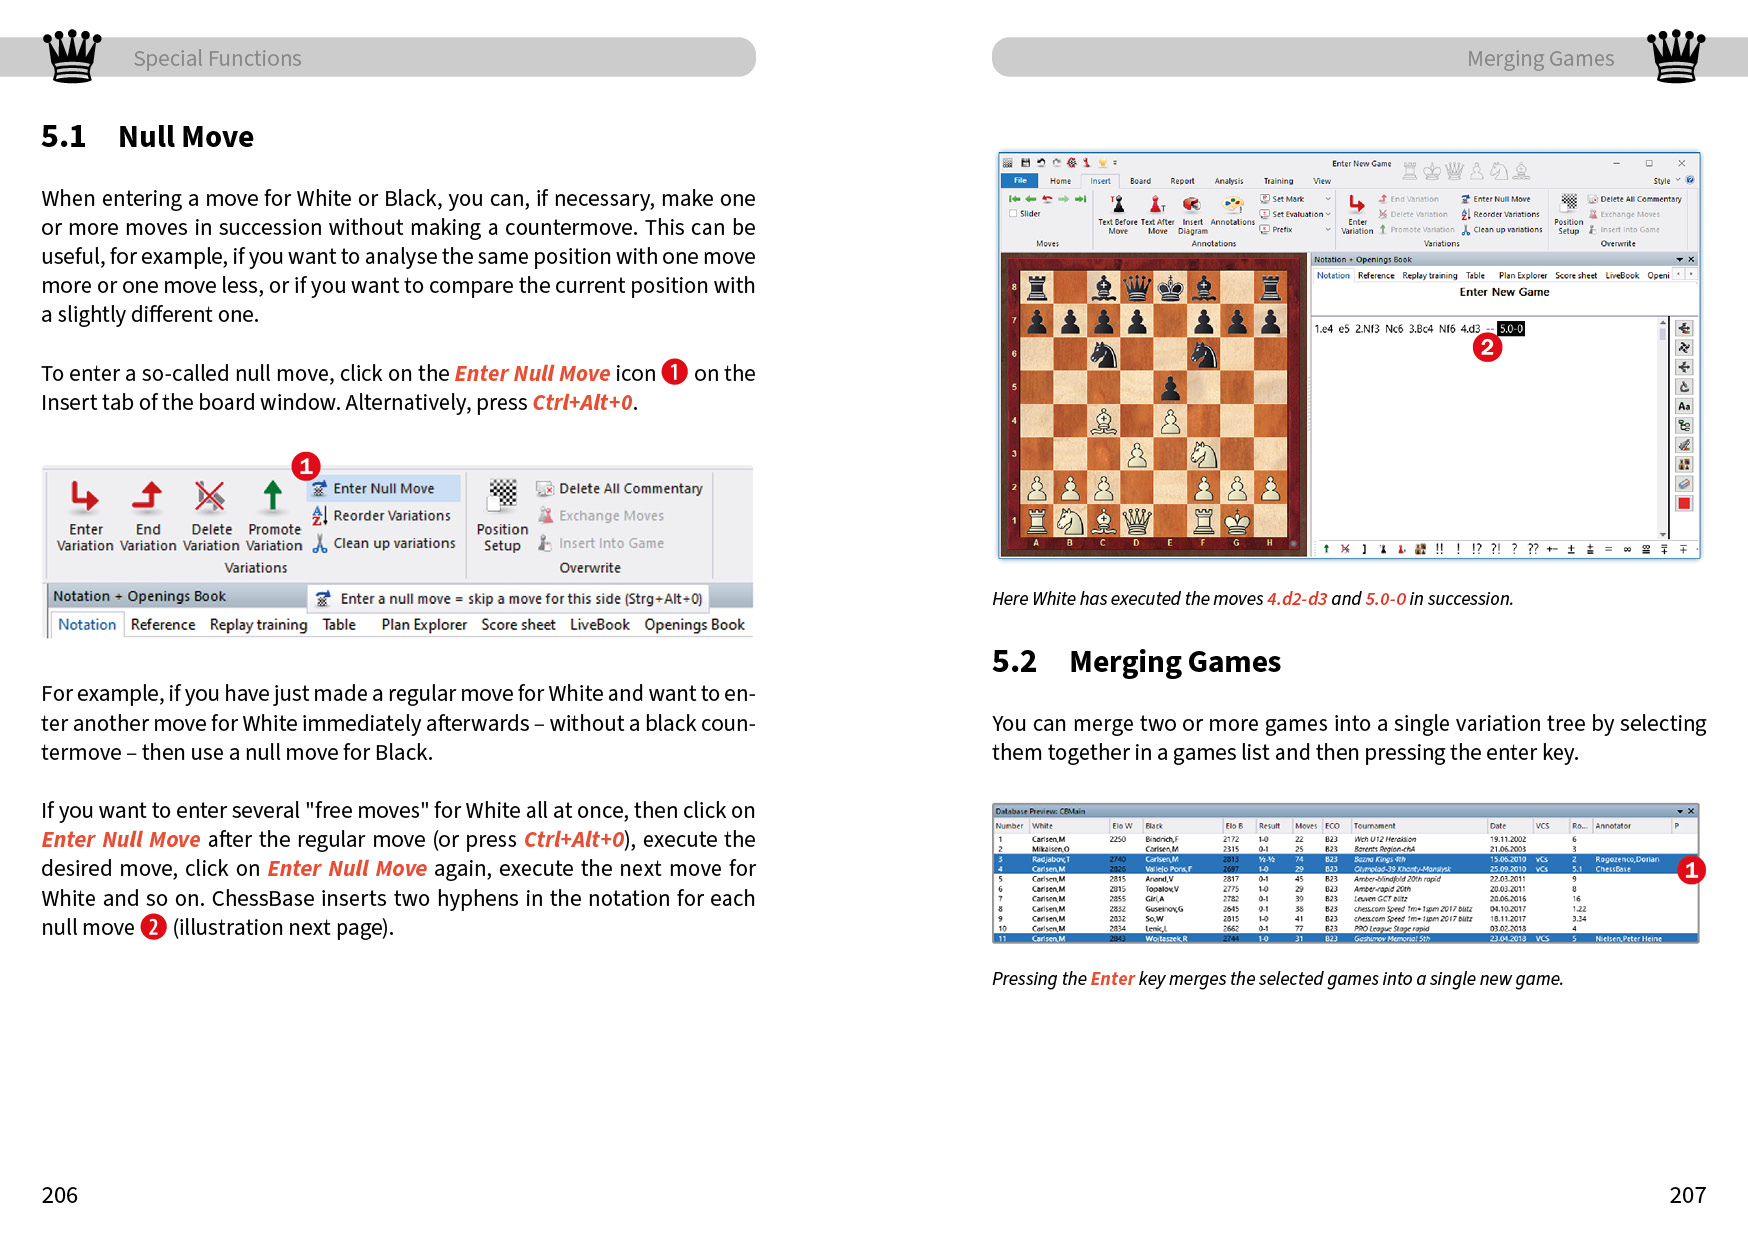 ChessBase 17 - Tipps und Tricks' von 'Walter Saumweber' - Buch -  '978-3-8328-0605-7